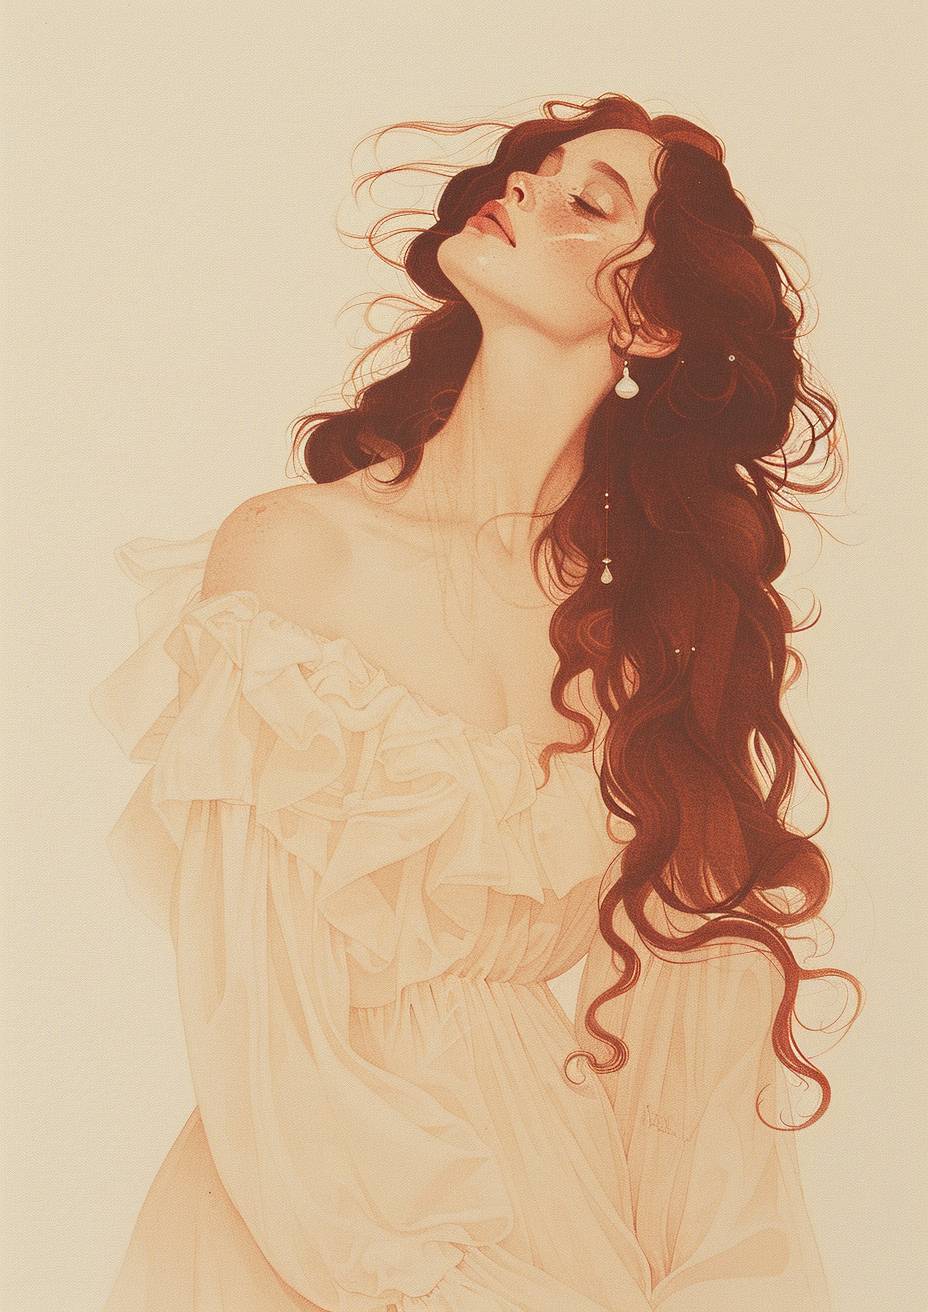 メアリー・ジェーン・アンセルによるハイパーリアリズムで超詳細な鉛筆と水彩イラスト、長い髪の美しい女性がヴィンテージドレスを着ているポートレートを描いており、遊び心と皮肉味があり、豊かで詳細、魅力的な顔のイラスト